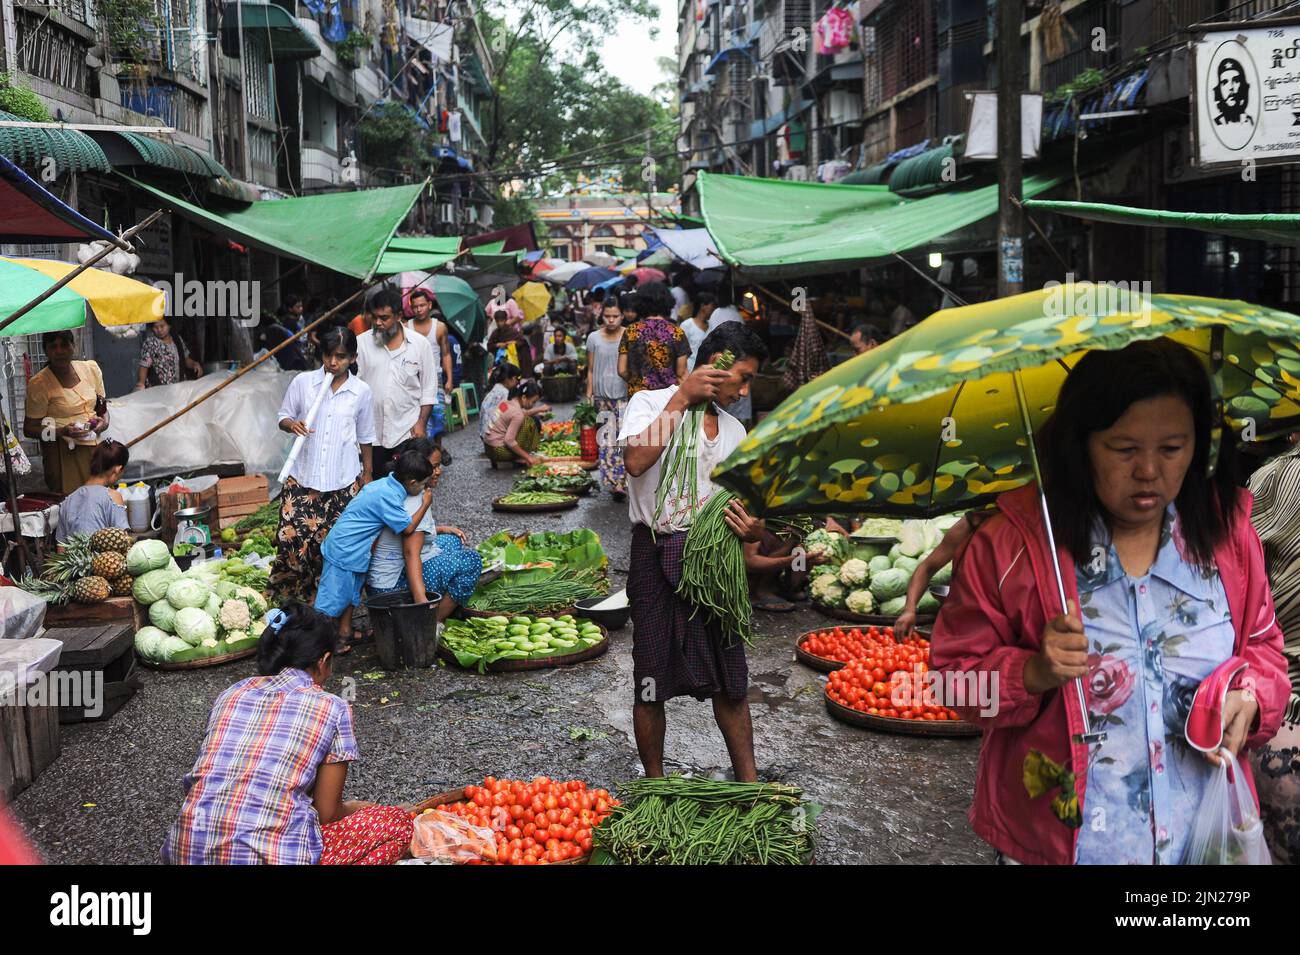 28.07.2013, Yangon, Myanmar, Asie - la scène du marché montre les gens achetant des légumes et de la nourriture dans un marché de rue dans le centre-ville pendant la saison des pluies. Banque D'Images